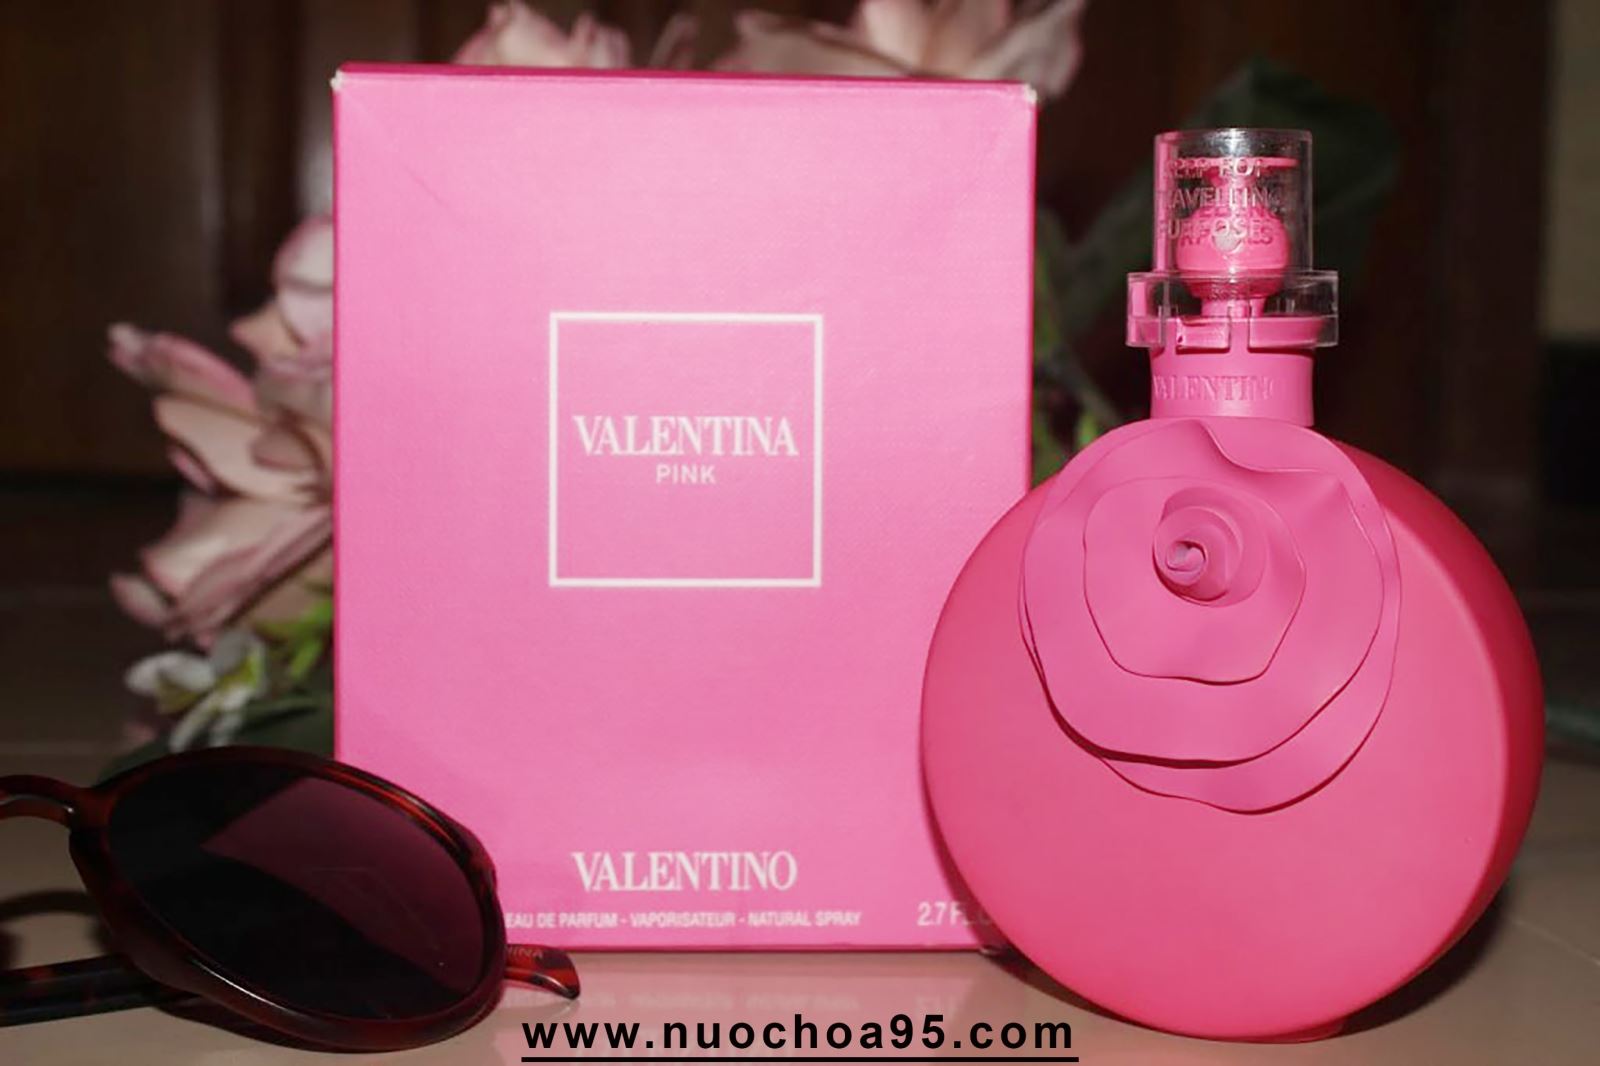 Nước hoa Valentina Pink - Ảnh 1